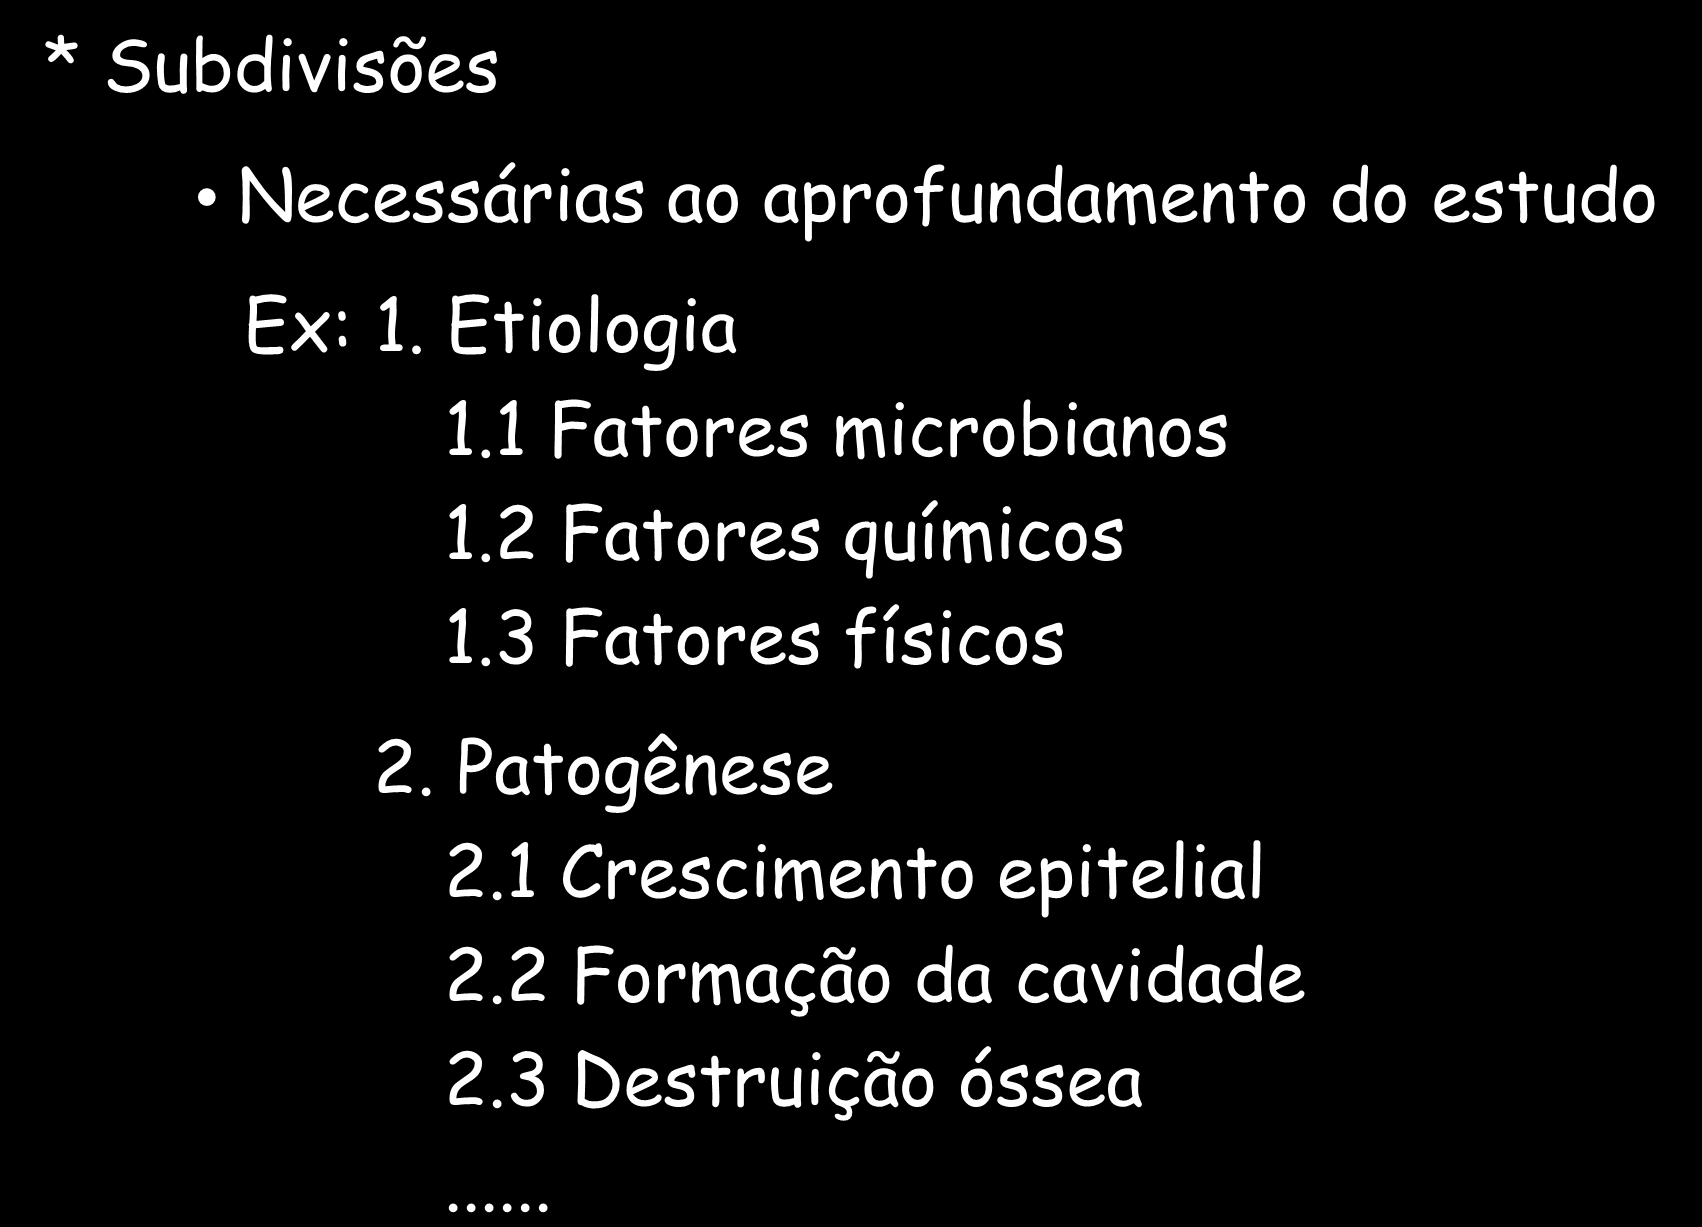 SEMINÁRIO - ROTEIRO * Subdivisões Necessárias ao aprofundamento do estudo Ex: 1. Etiologia 1.1 Fatores microbianos 1.